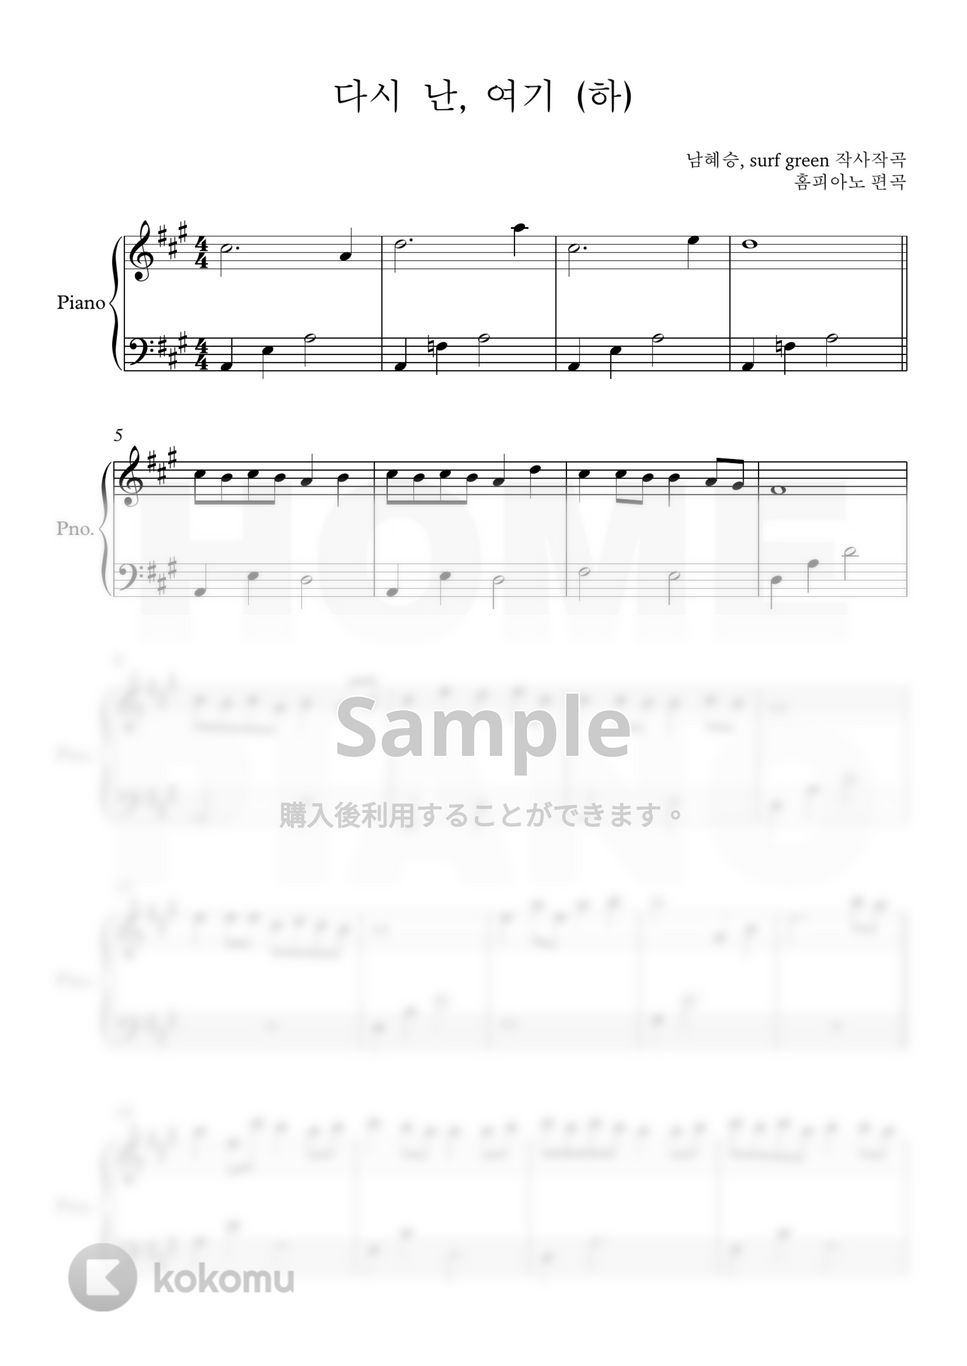 愛の不時着 OST - もう一度私は、ここに (初級) by HOME PIANO